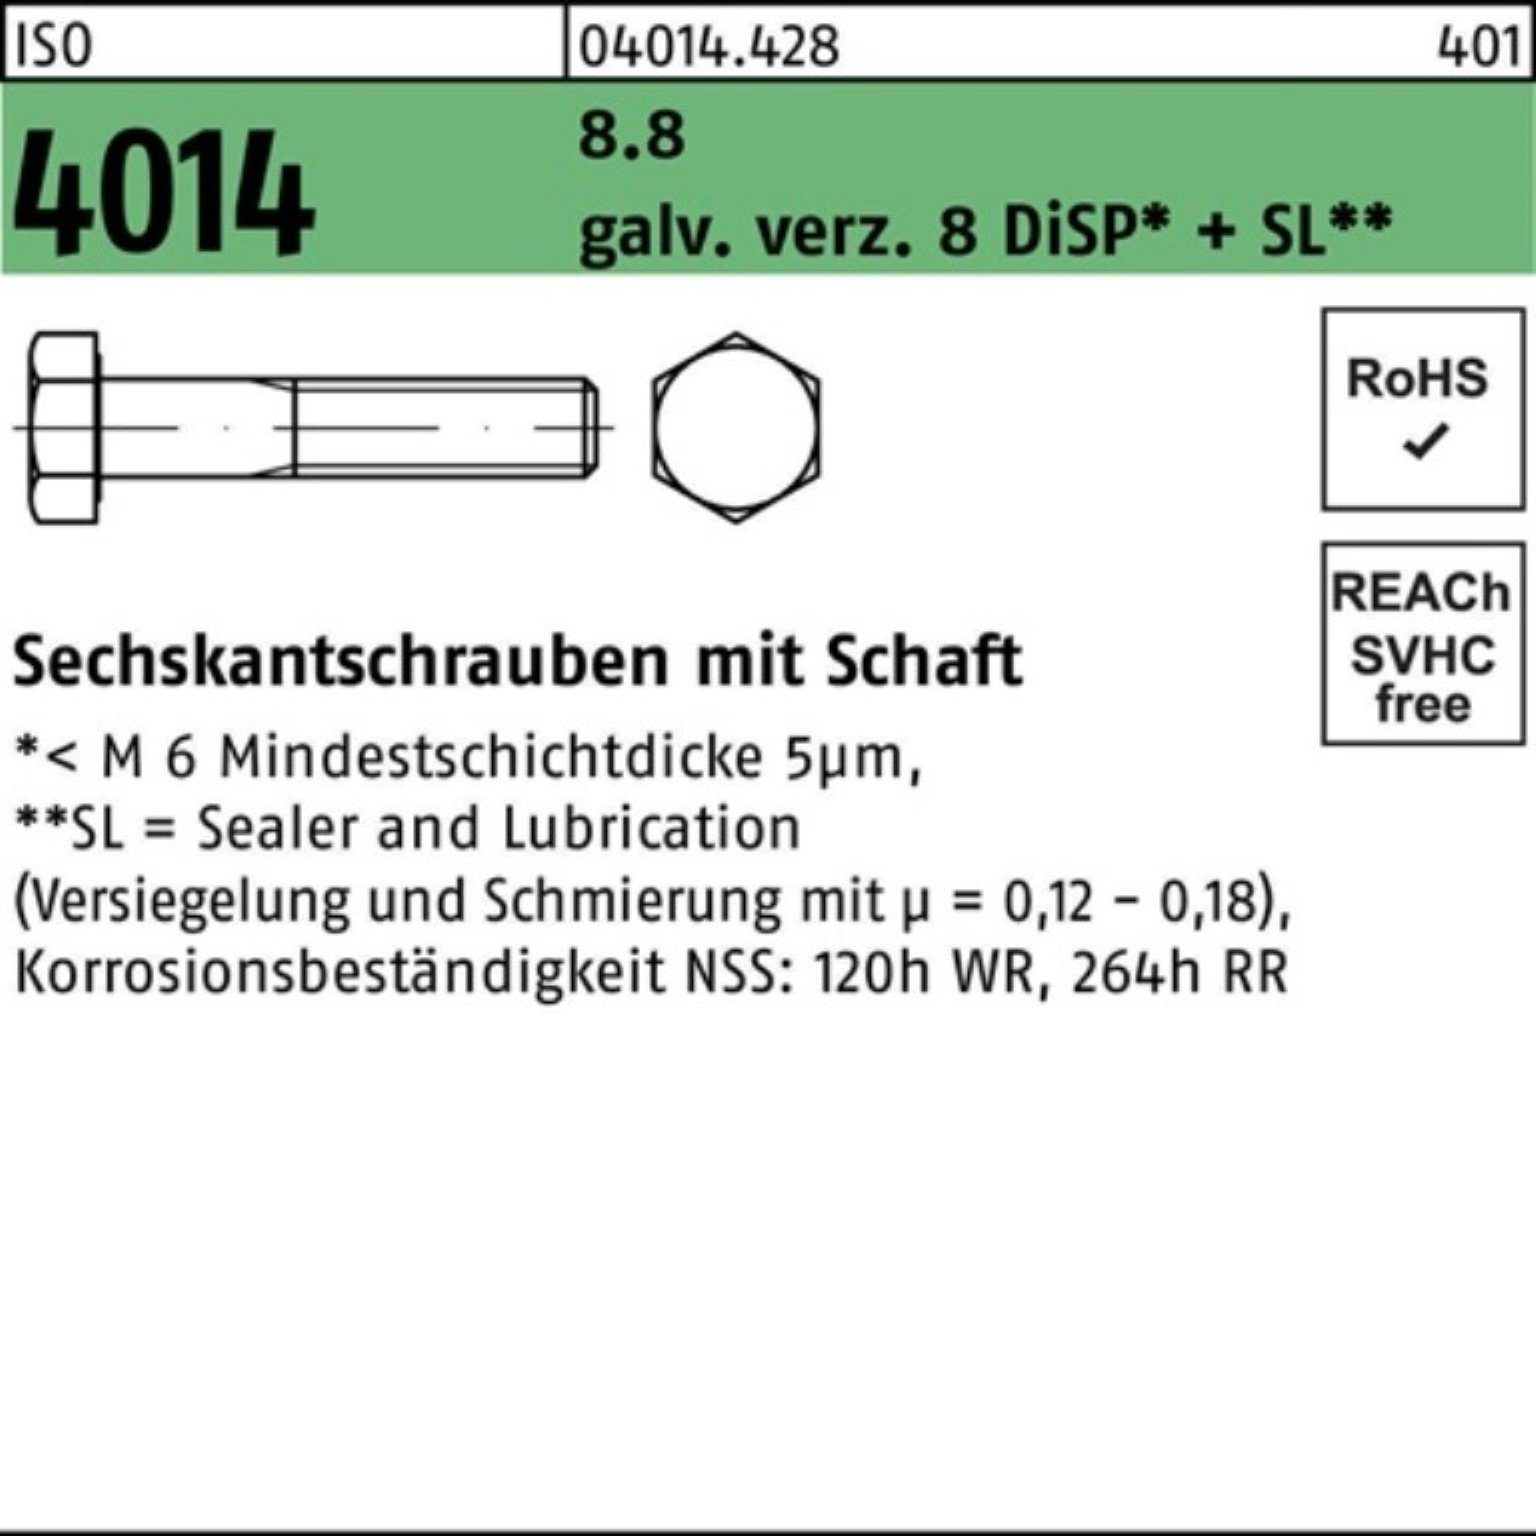 Pack Bufab 8.8 Sechskantschraube galv.verz. Schaft 100er Sechskantschraube 8 M24x300 4014 ISO